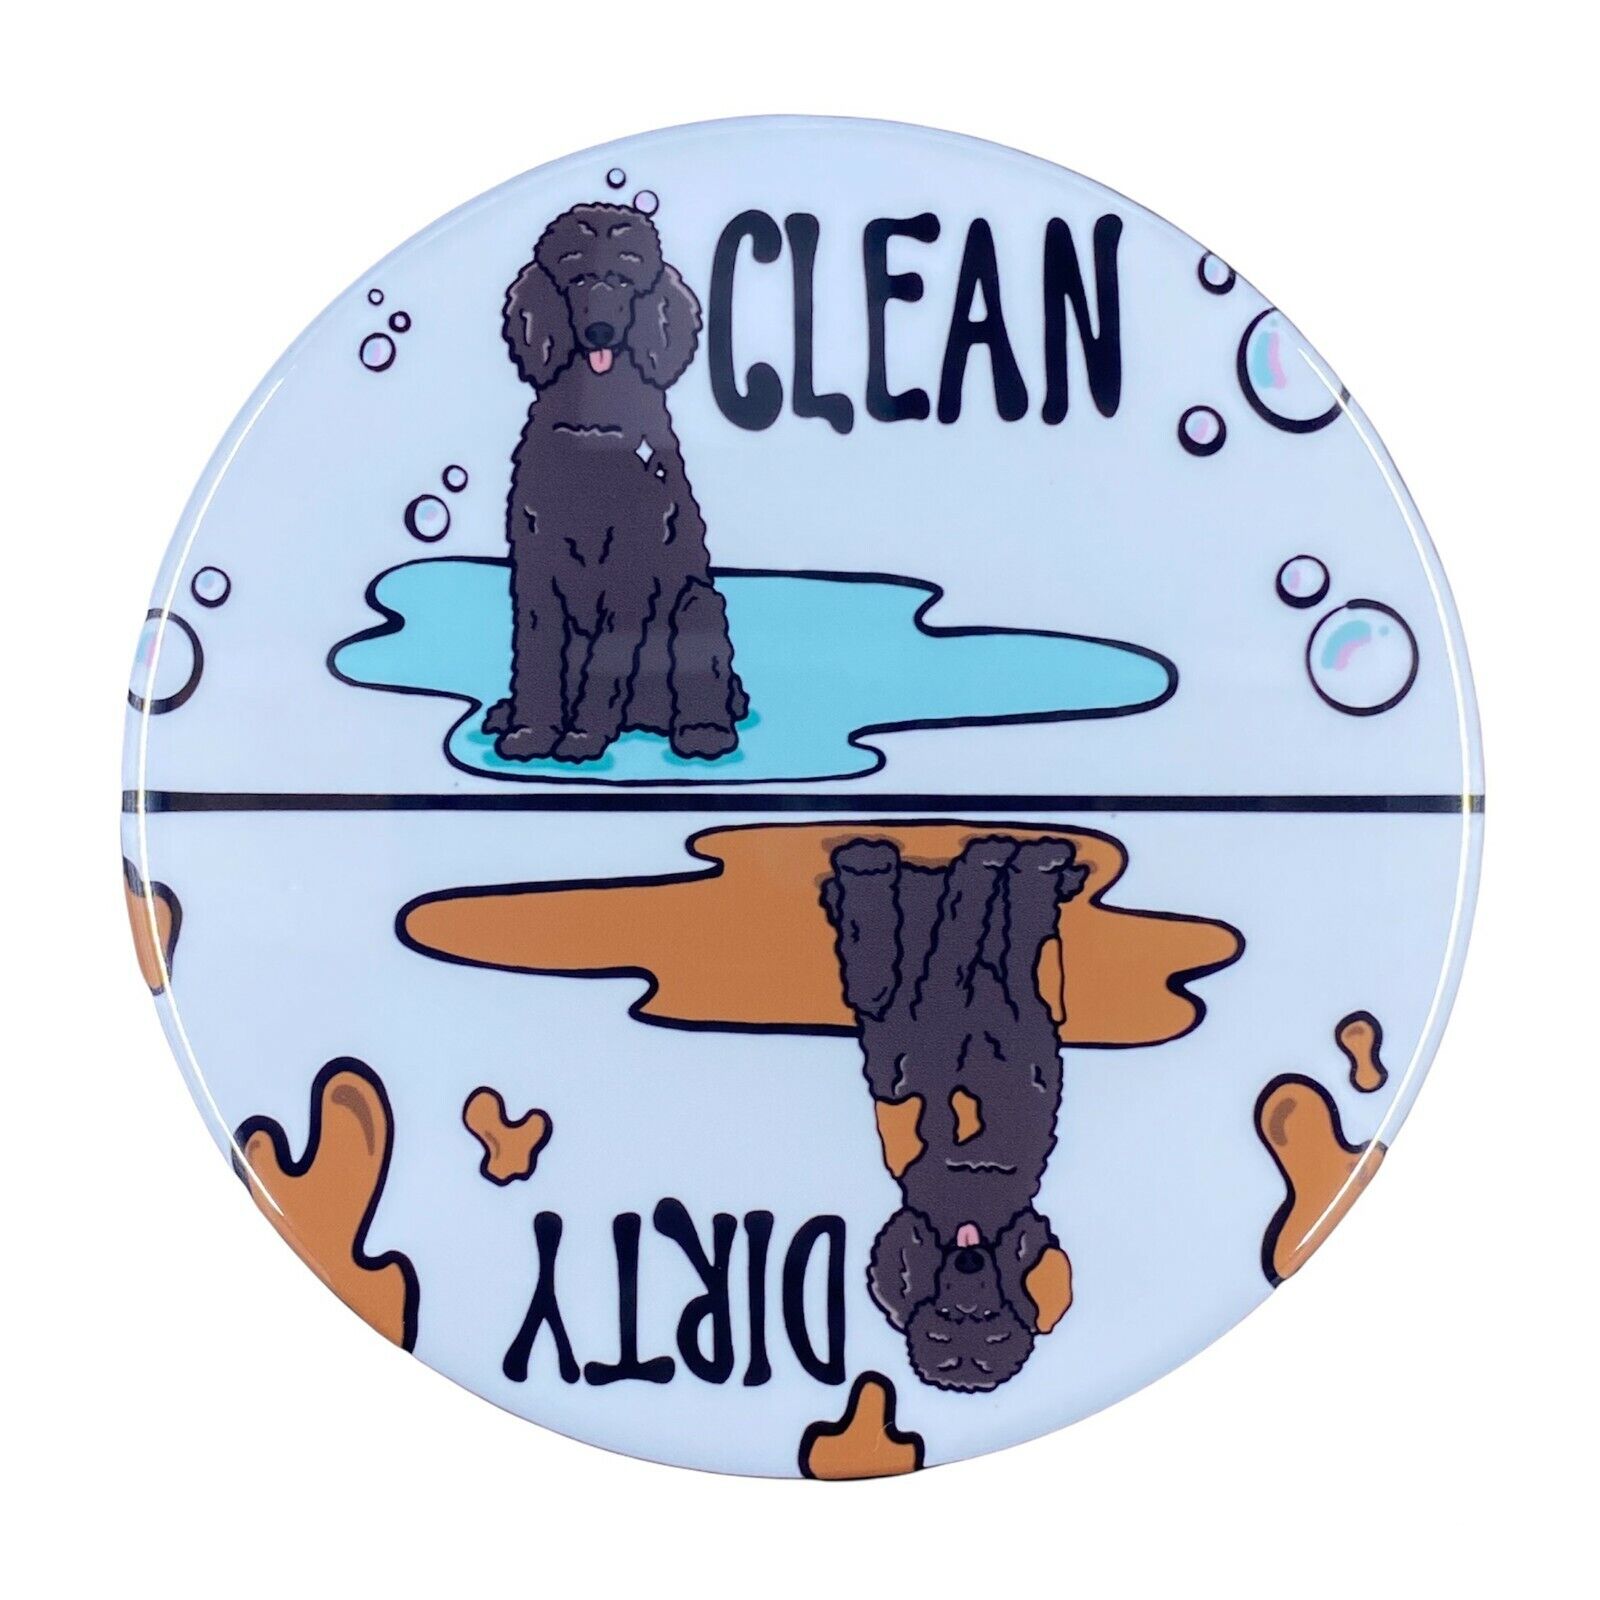 Black Standard Poodle Dishwasher Magnet Dog Kitchen Cleaning Decor Gift